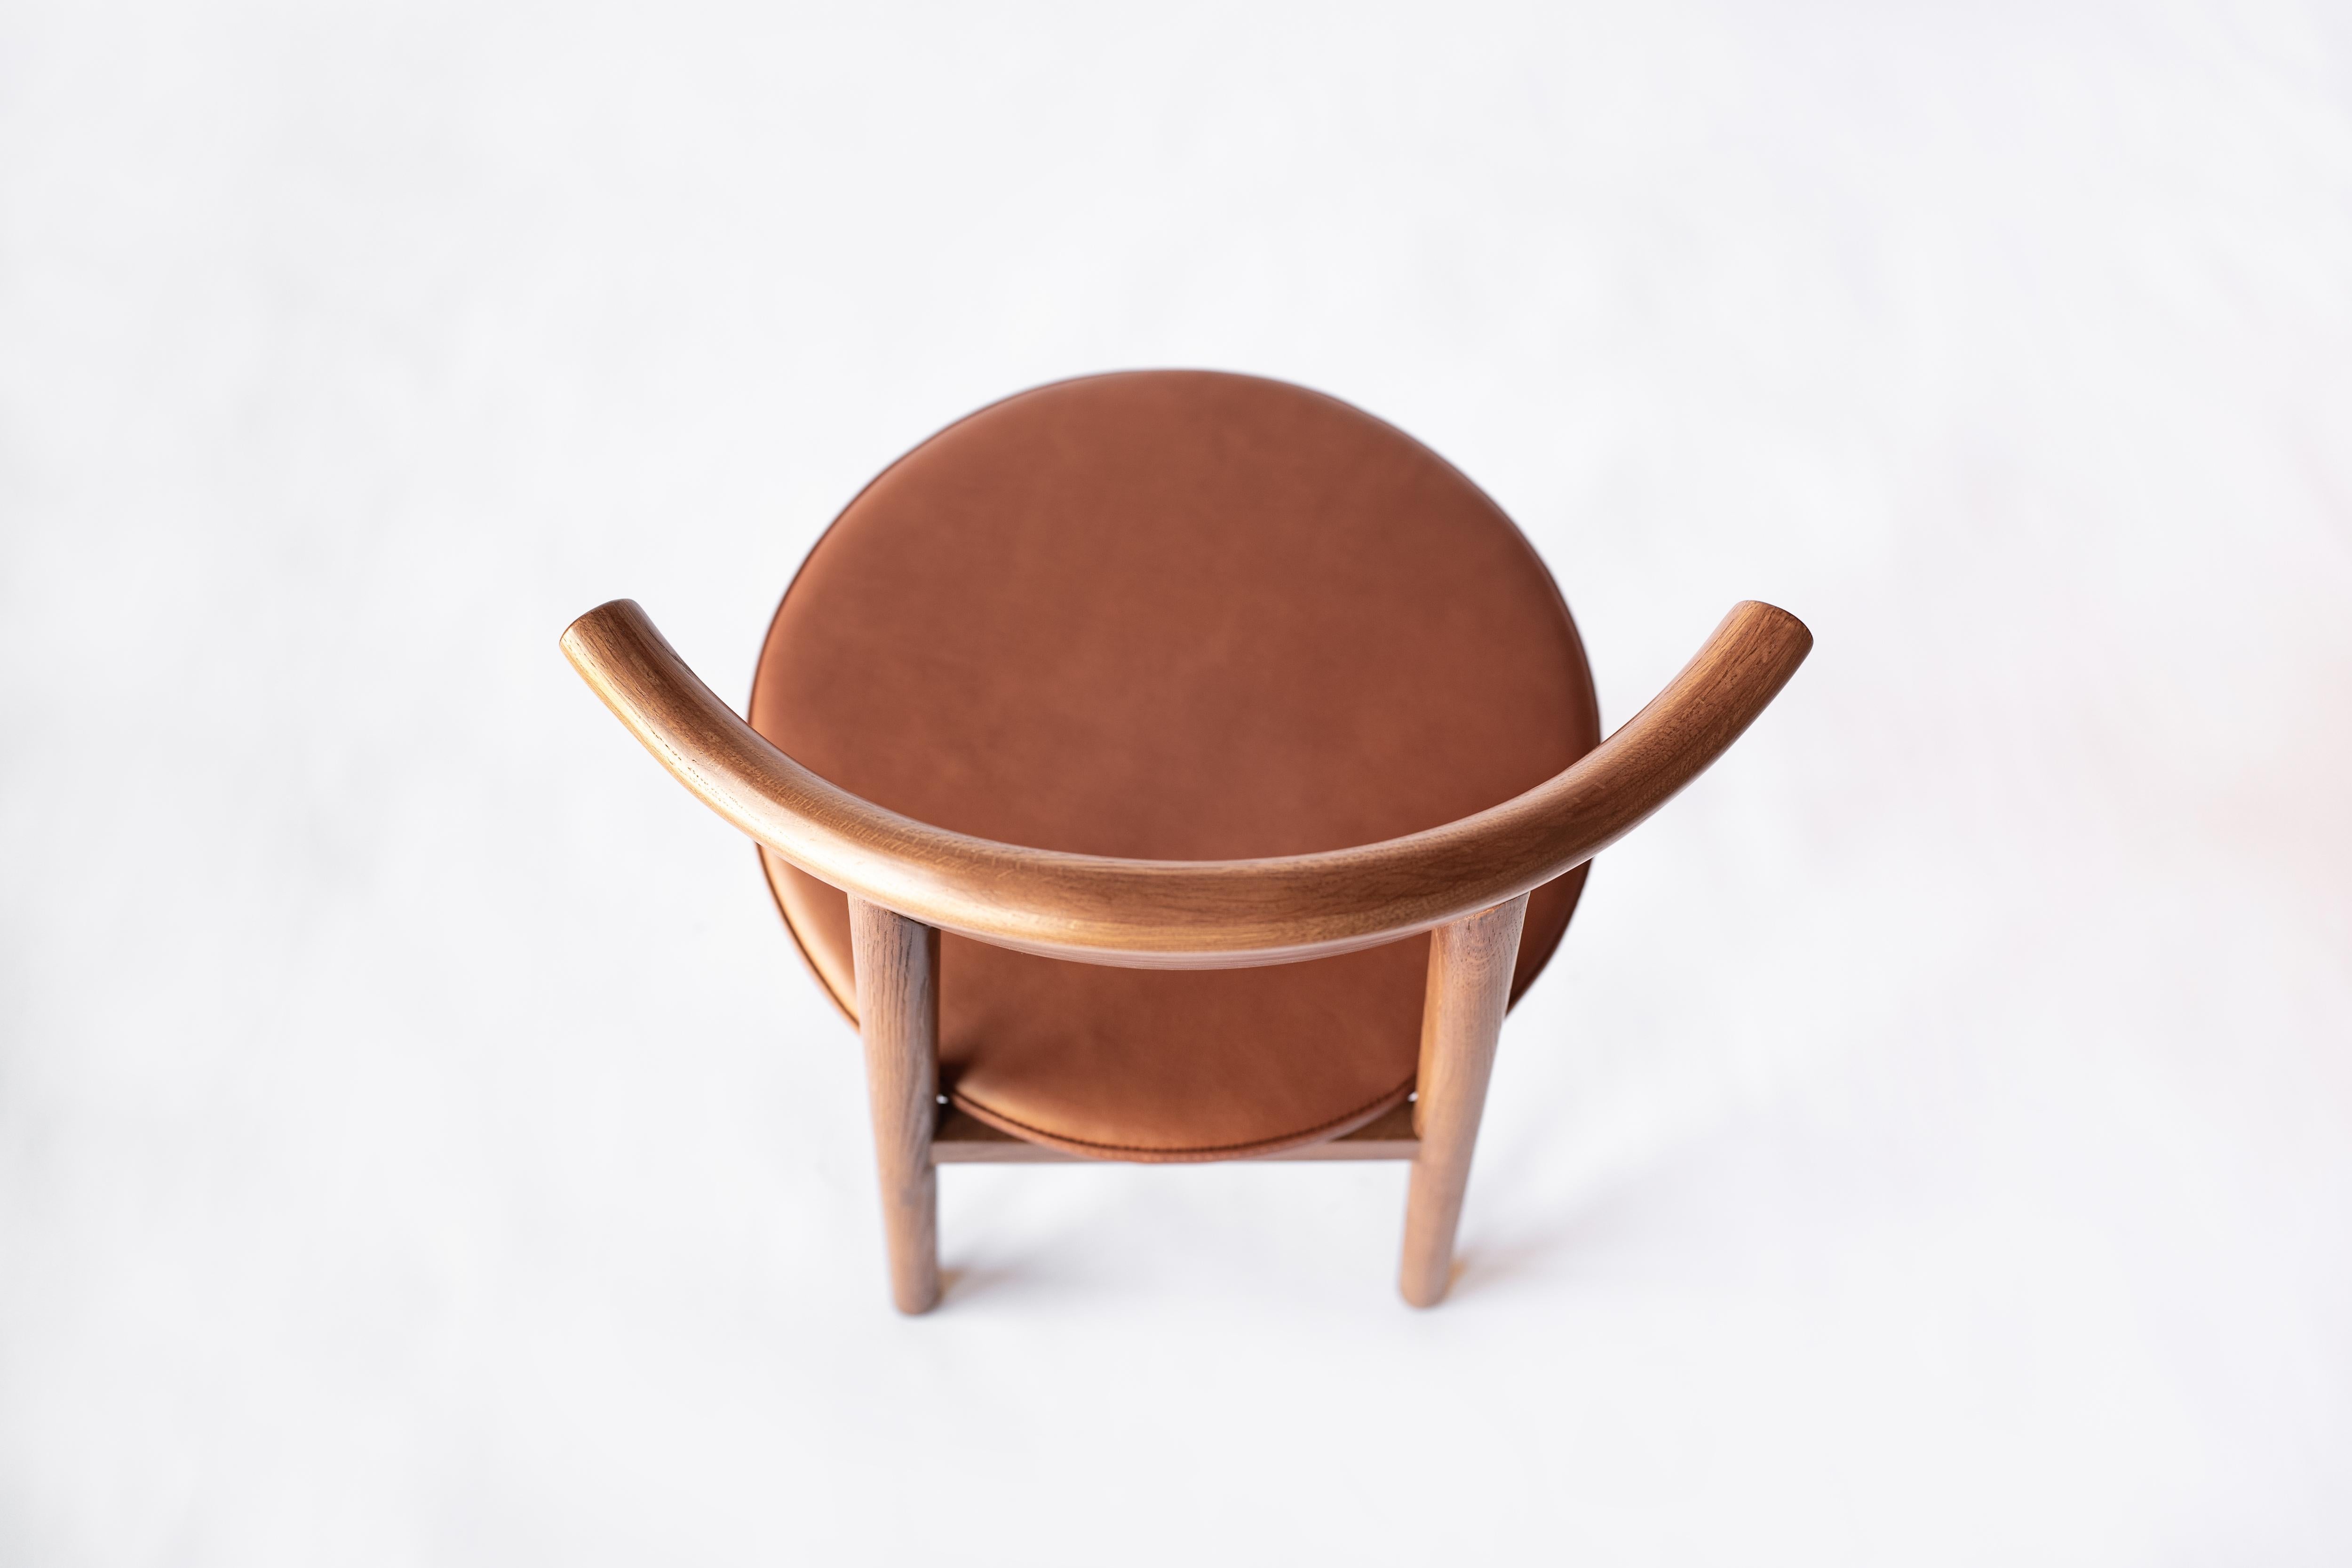 Sun at Six ist ein Studio für zeitgenössisches Möbeldesign, das mit traditionellen chinesischen Tischlermeistern zusammenarbeitet, um unsere Stücke in Handarbeit zu fertigen, wobei traditionelle Tischlerarbeiten verwendet werden. Der Stuhl Ember ist